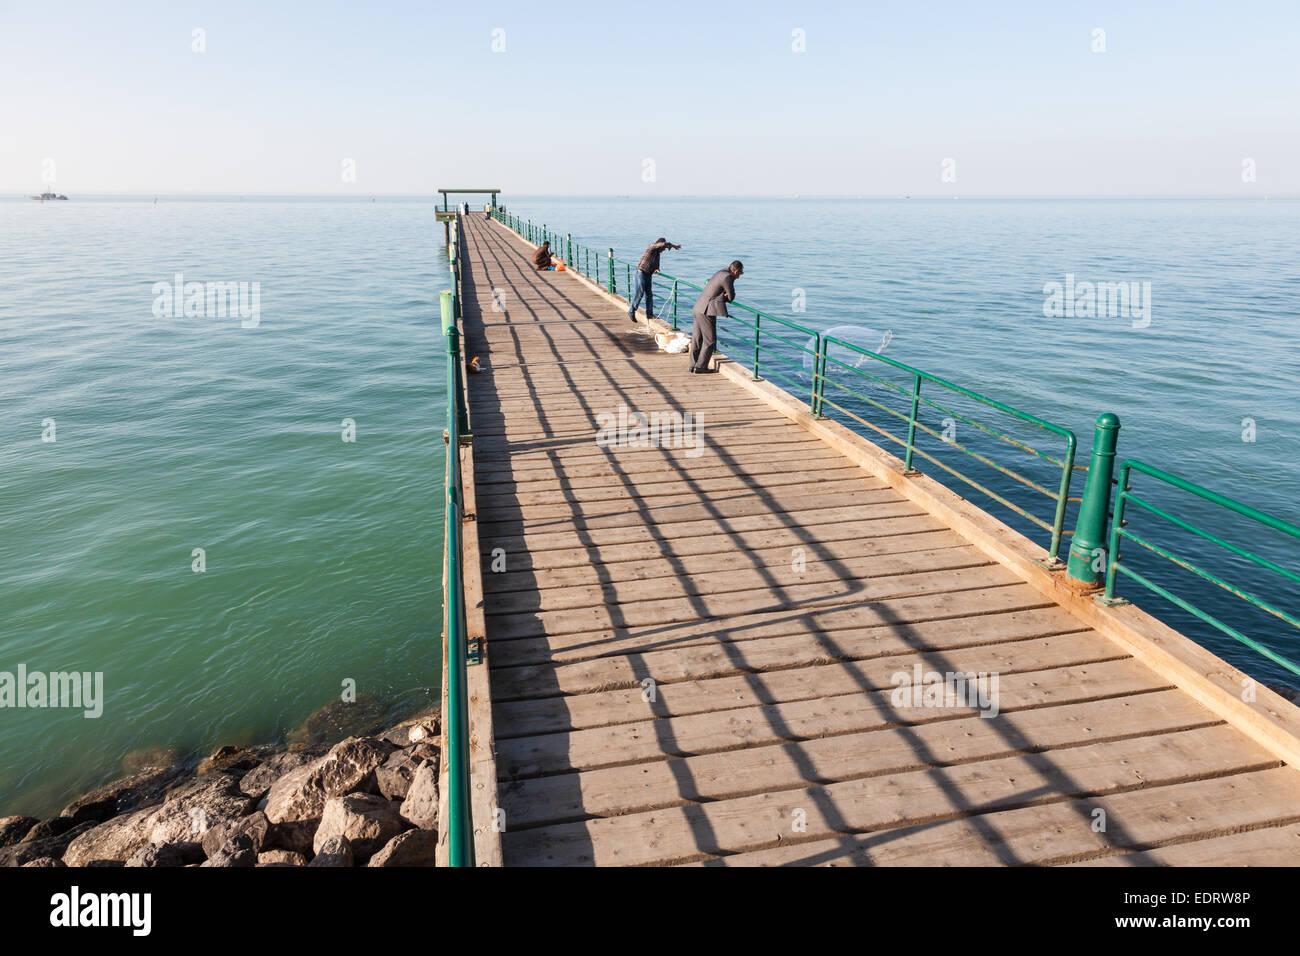 Souq Sharq Pier at the Arabian Gulf coast in Kuwait Stock Photo